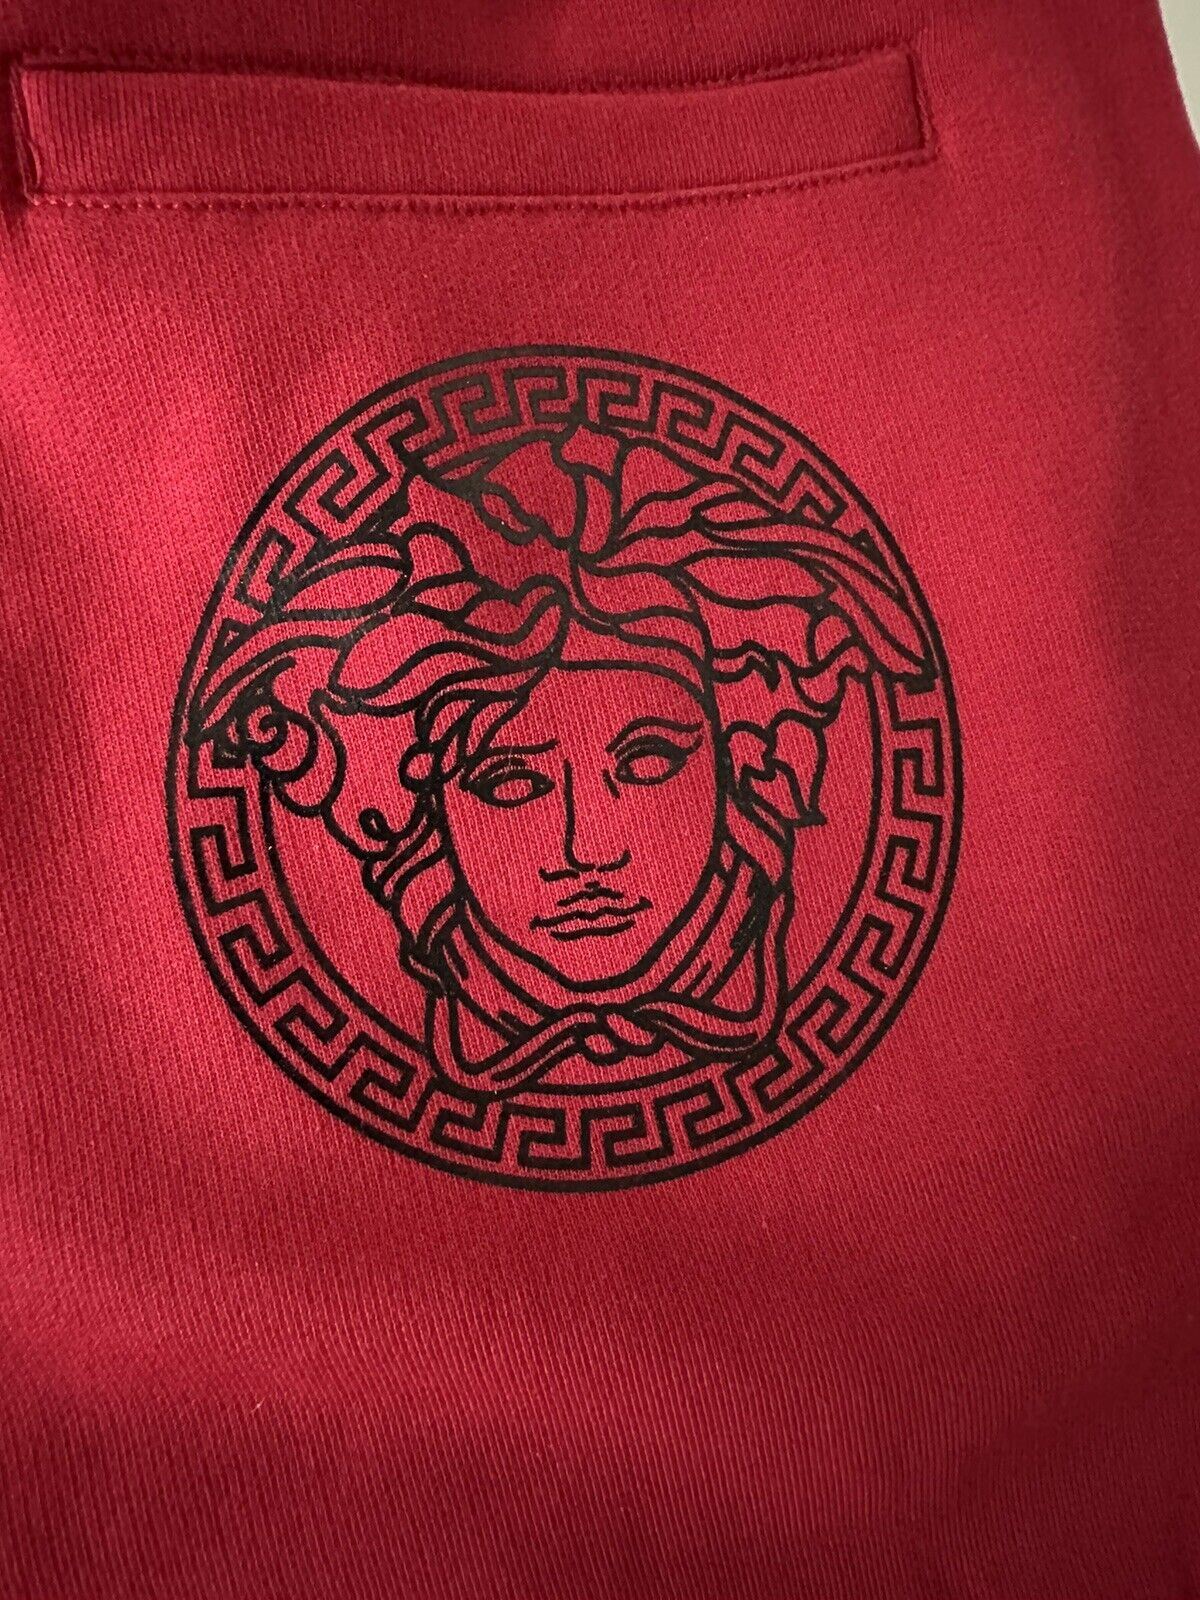 Neu mit Etikett: 650 $ Versace Herren-Hose mit Medusa-Logo, Rot, Größe 3XL A89515S 